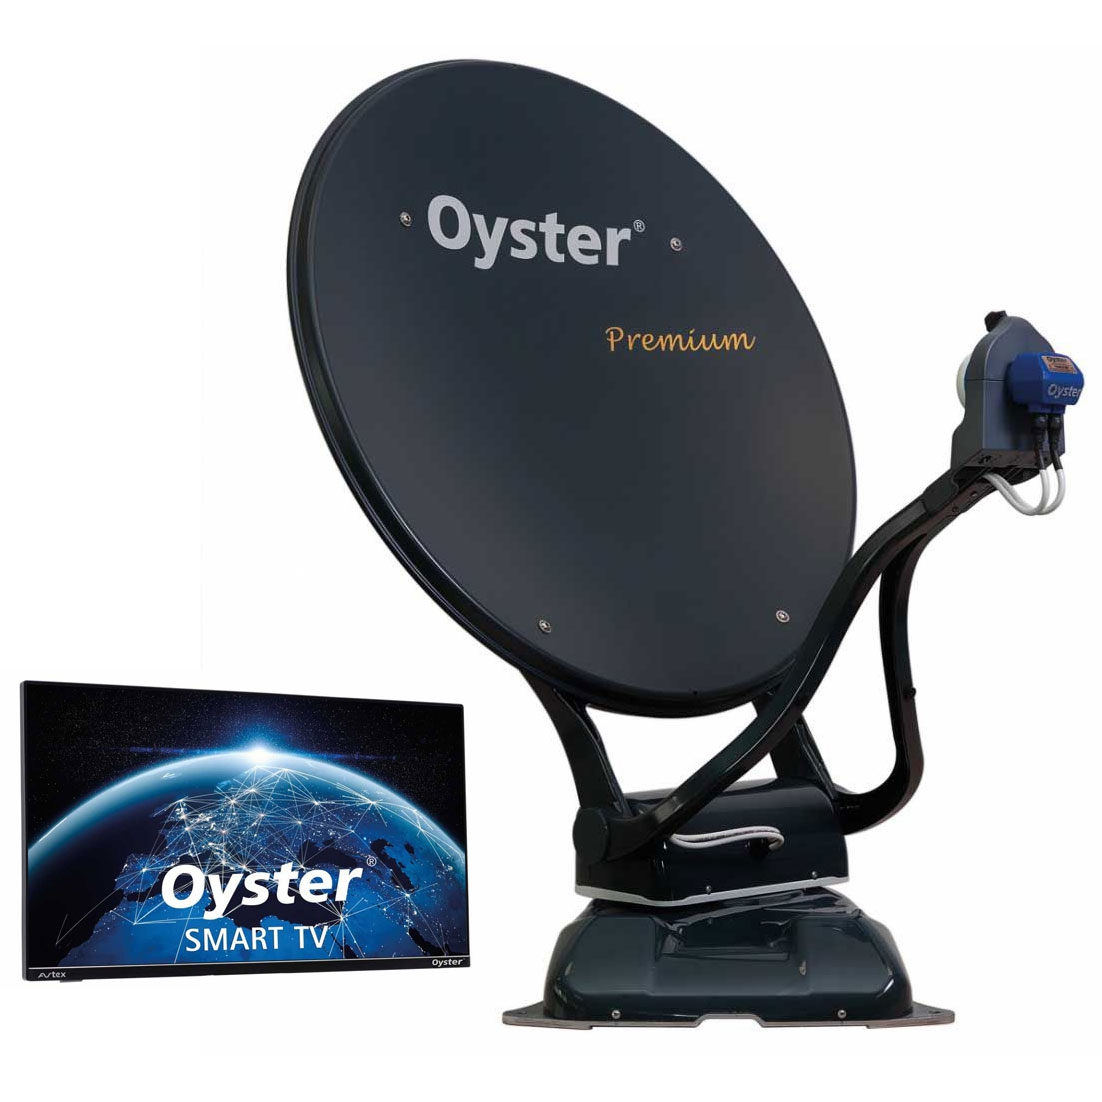 TEN HAAFT Oyster 70 Premium Sat-Anlage TWIN mit Smart TV 19 Zoll - 87536 - 88379